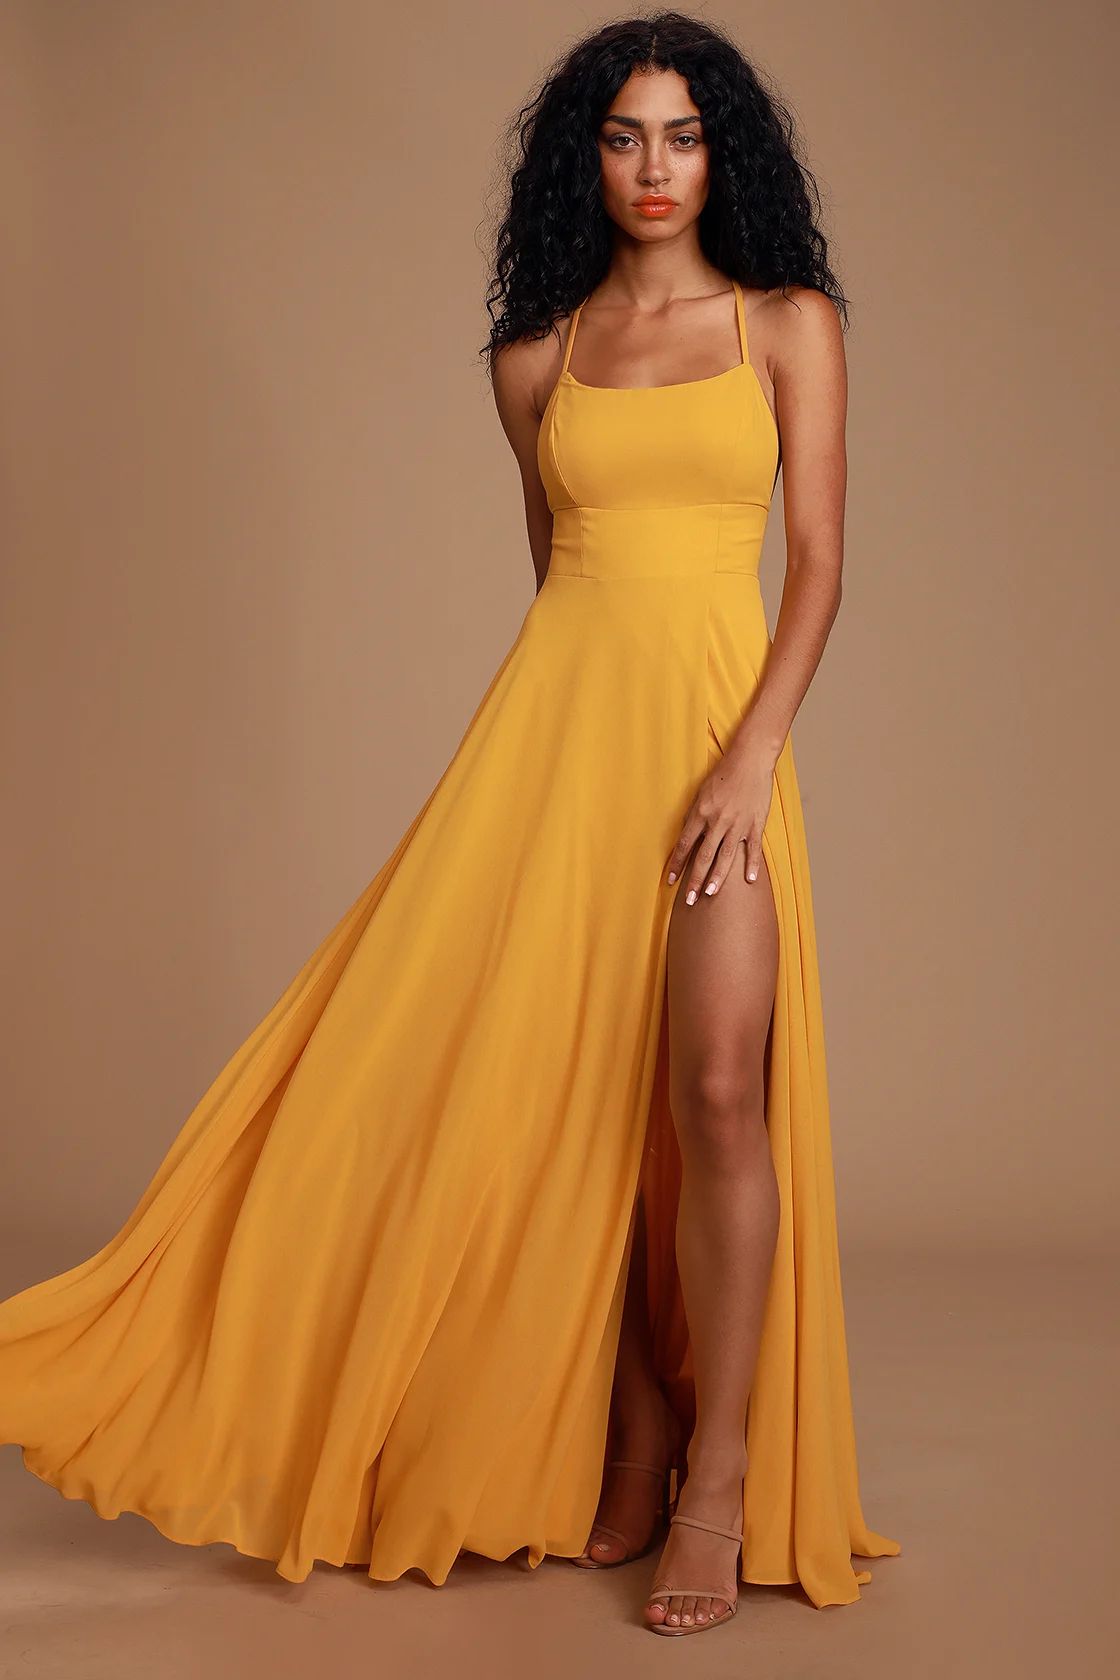 Dreamy Romance Mustard Yellow Backless Maxi Dress | Lulus